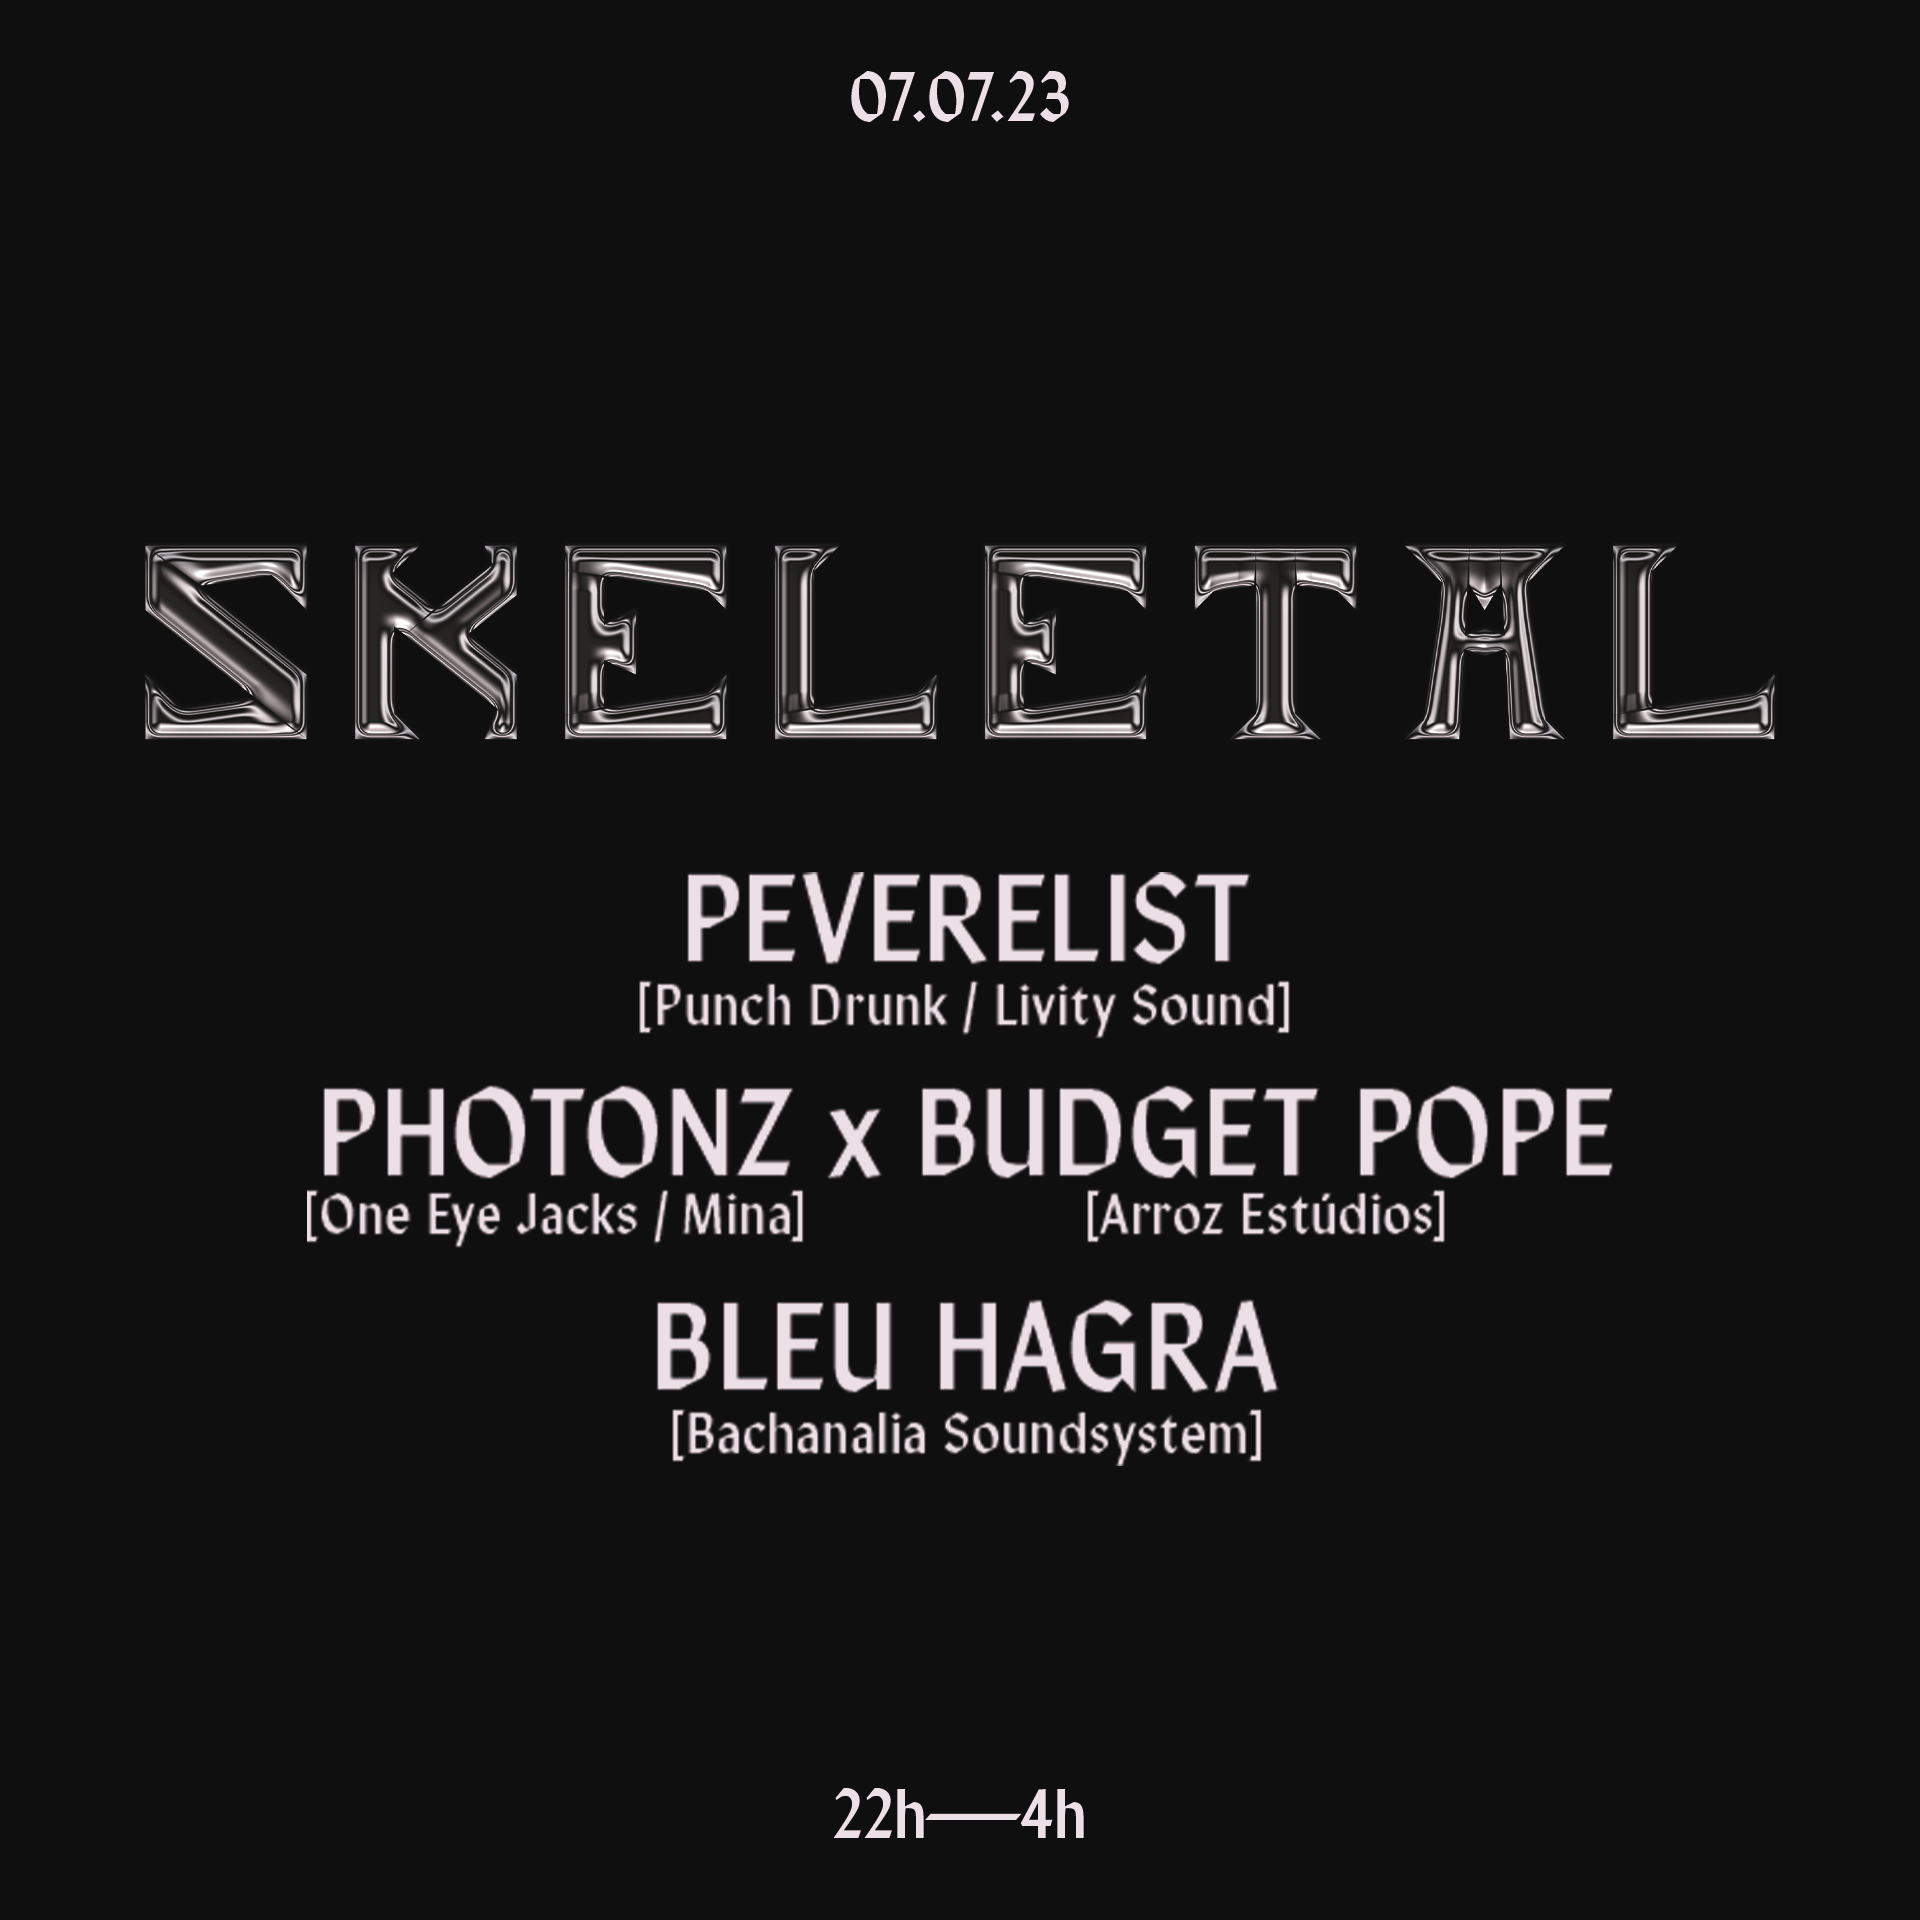 Skeletal with Peverelist - Página trasera